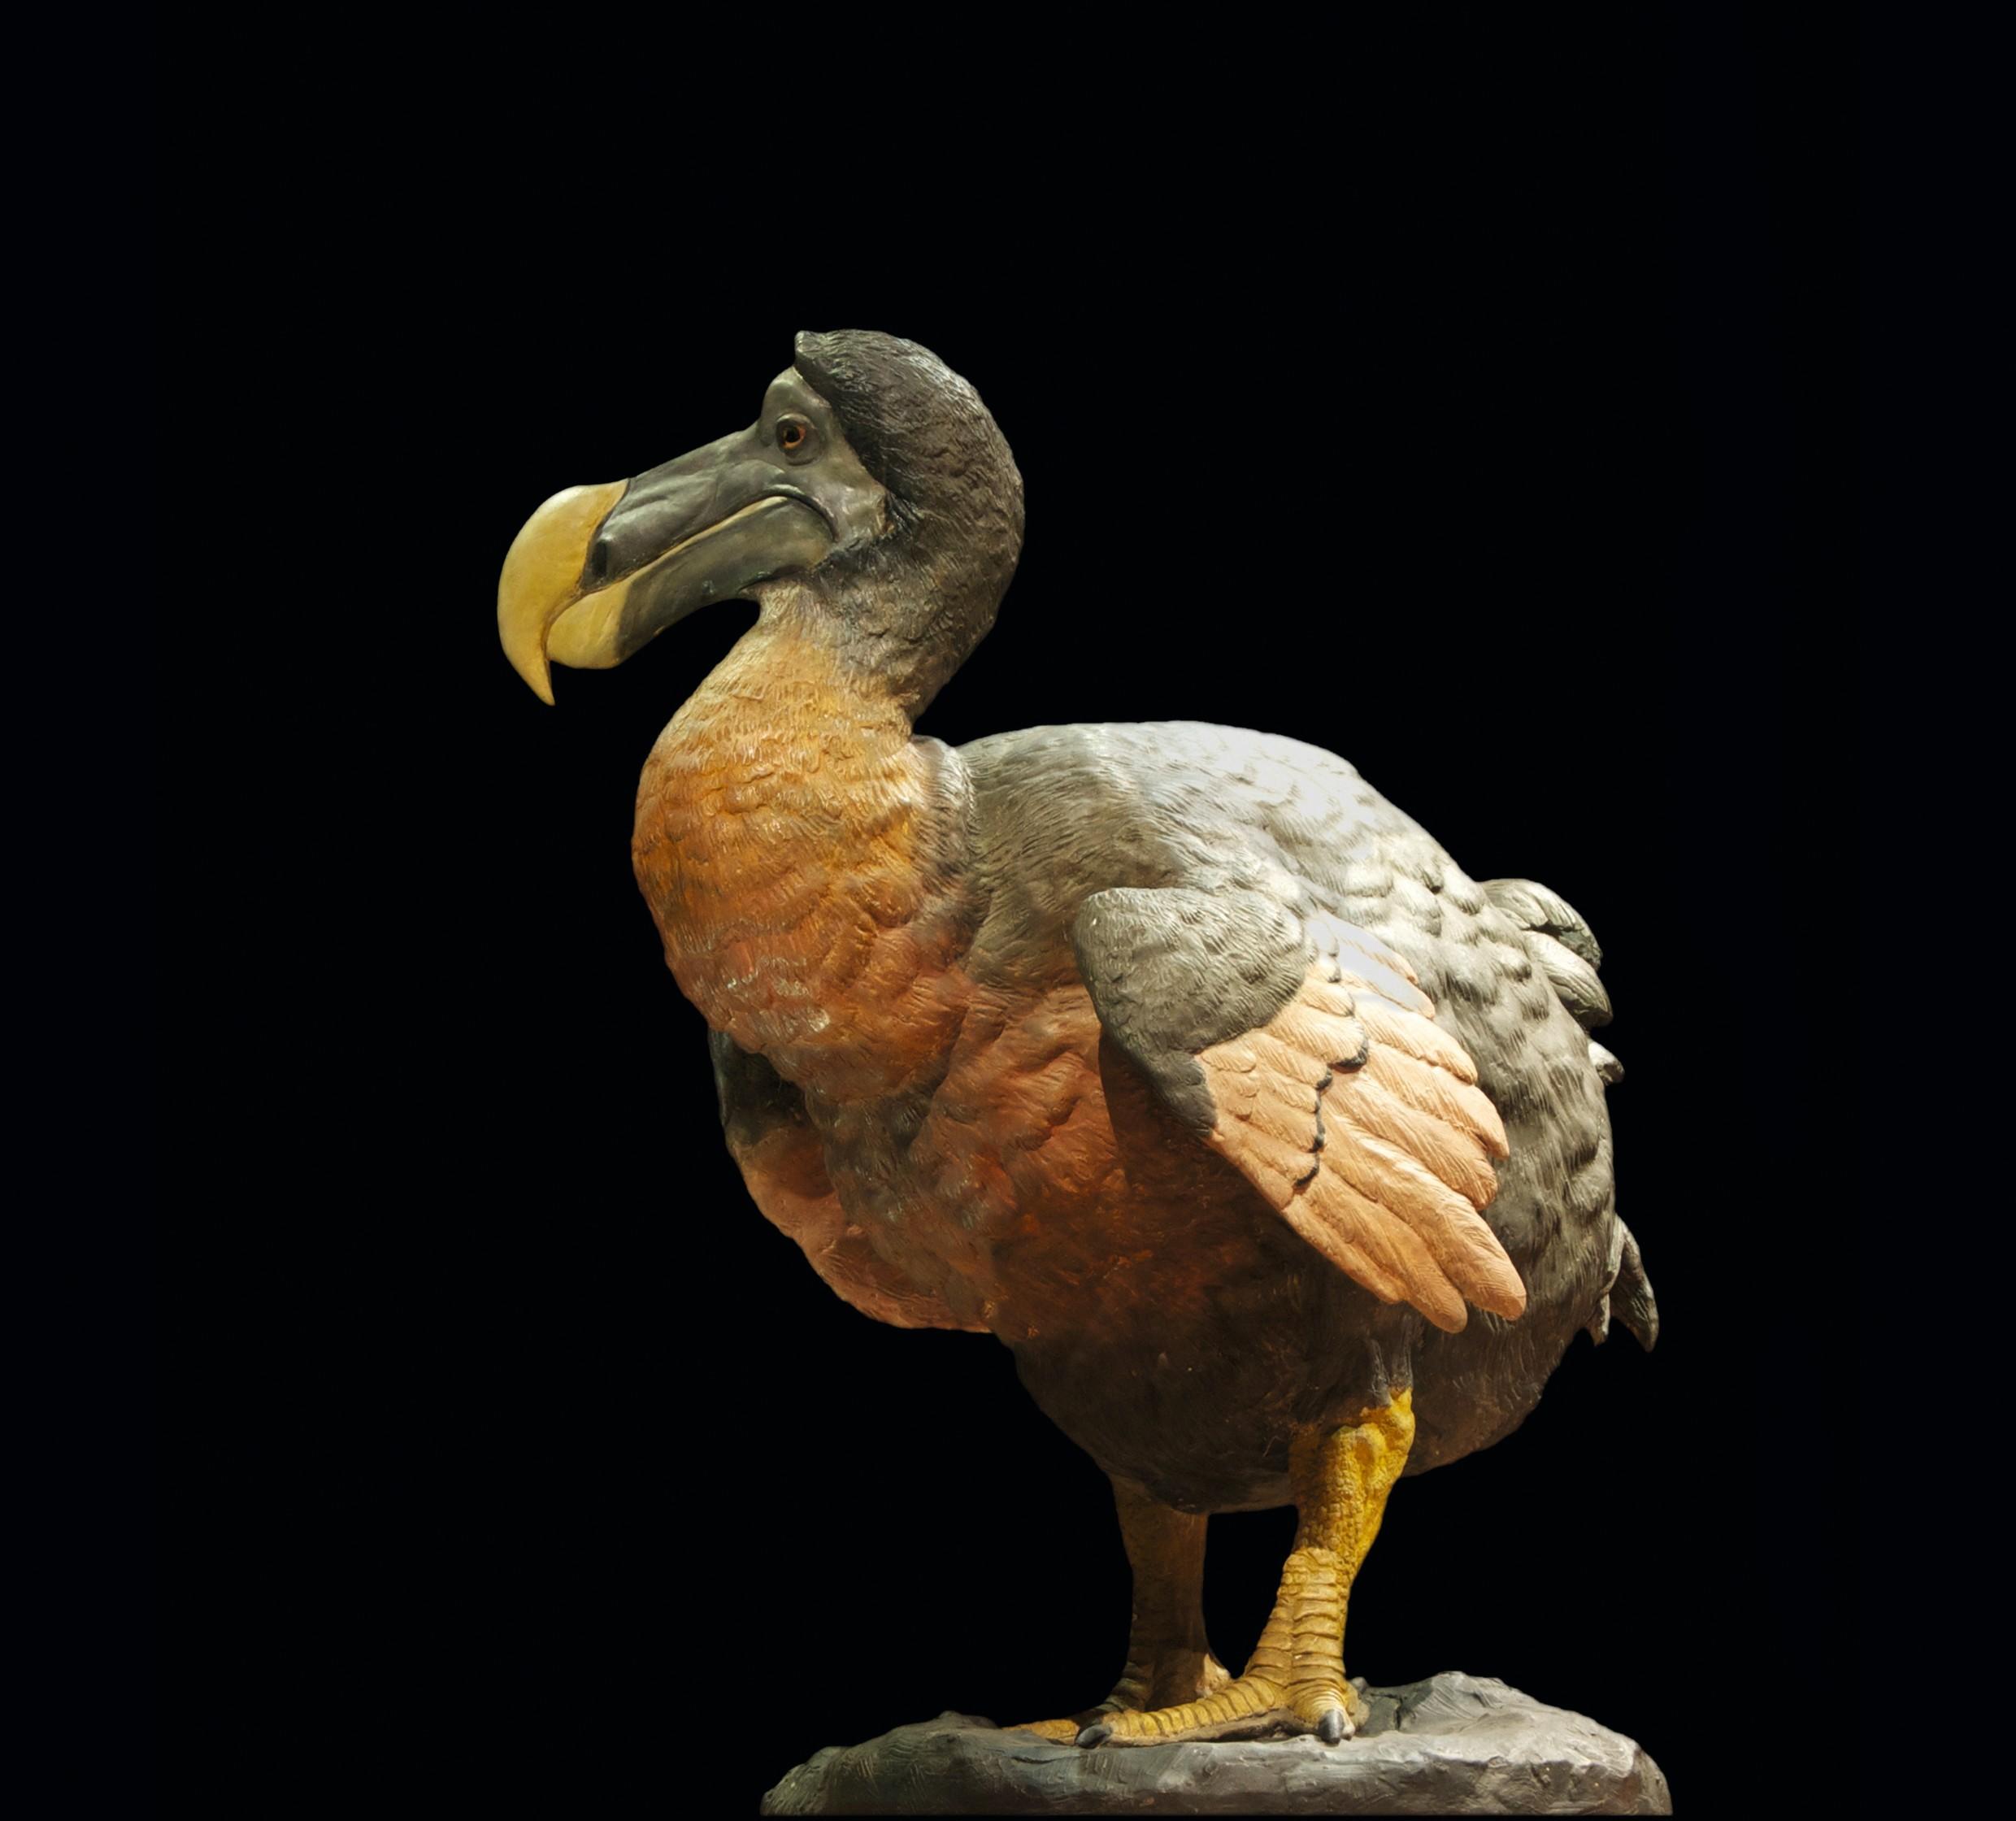 Reconstitution du dodo au Museum national d’histoire naturelle de Paris.